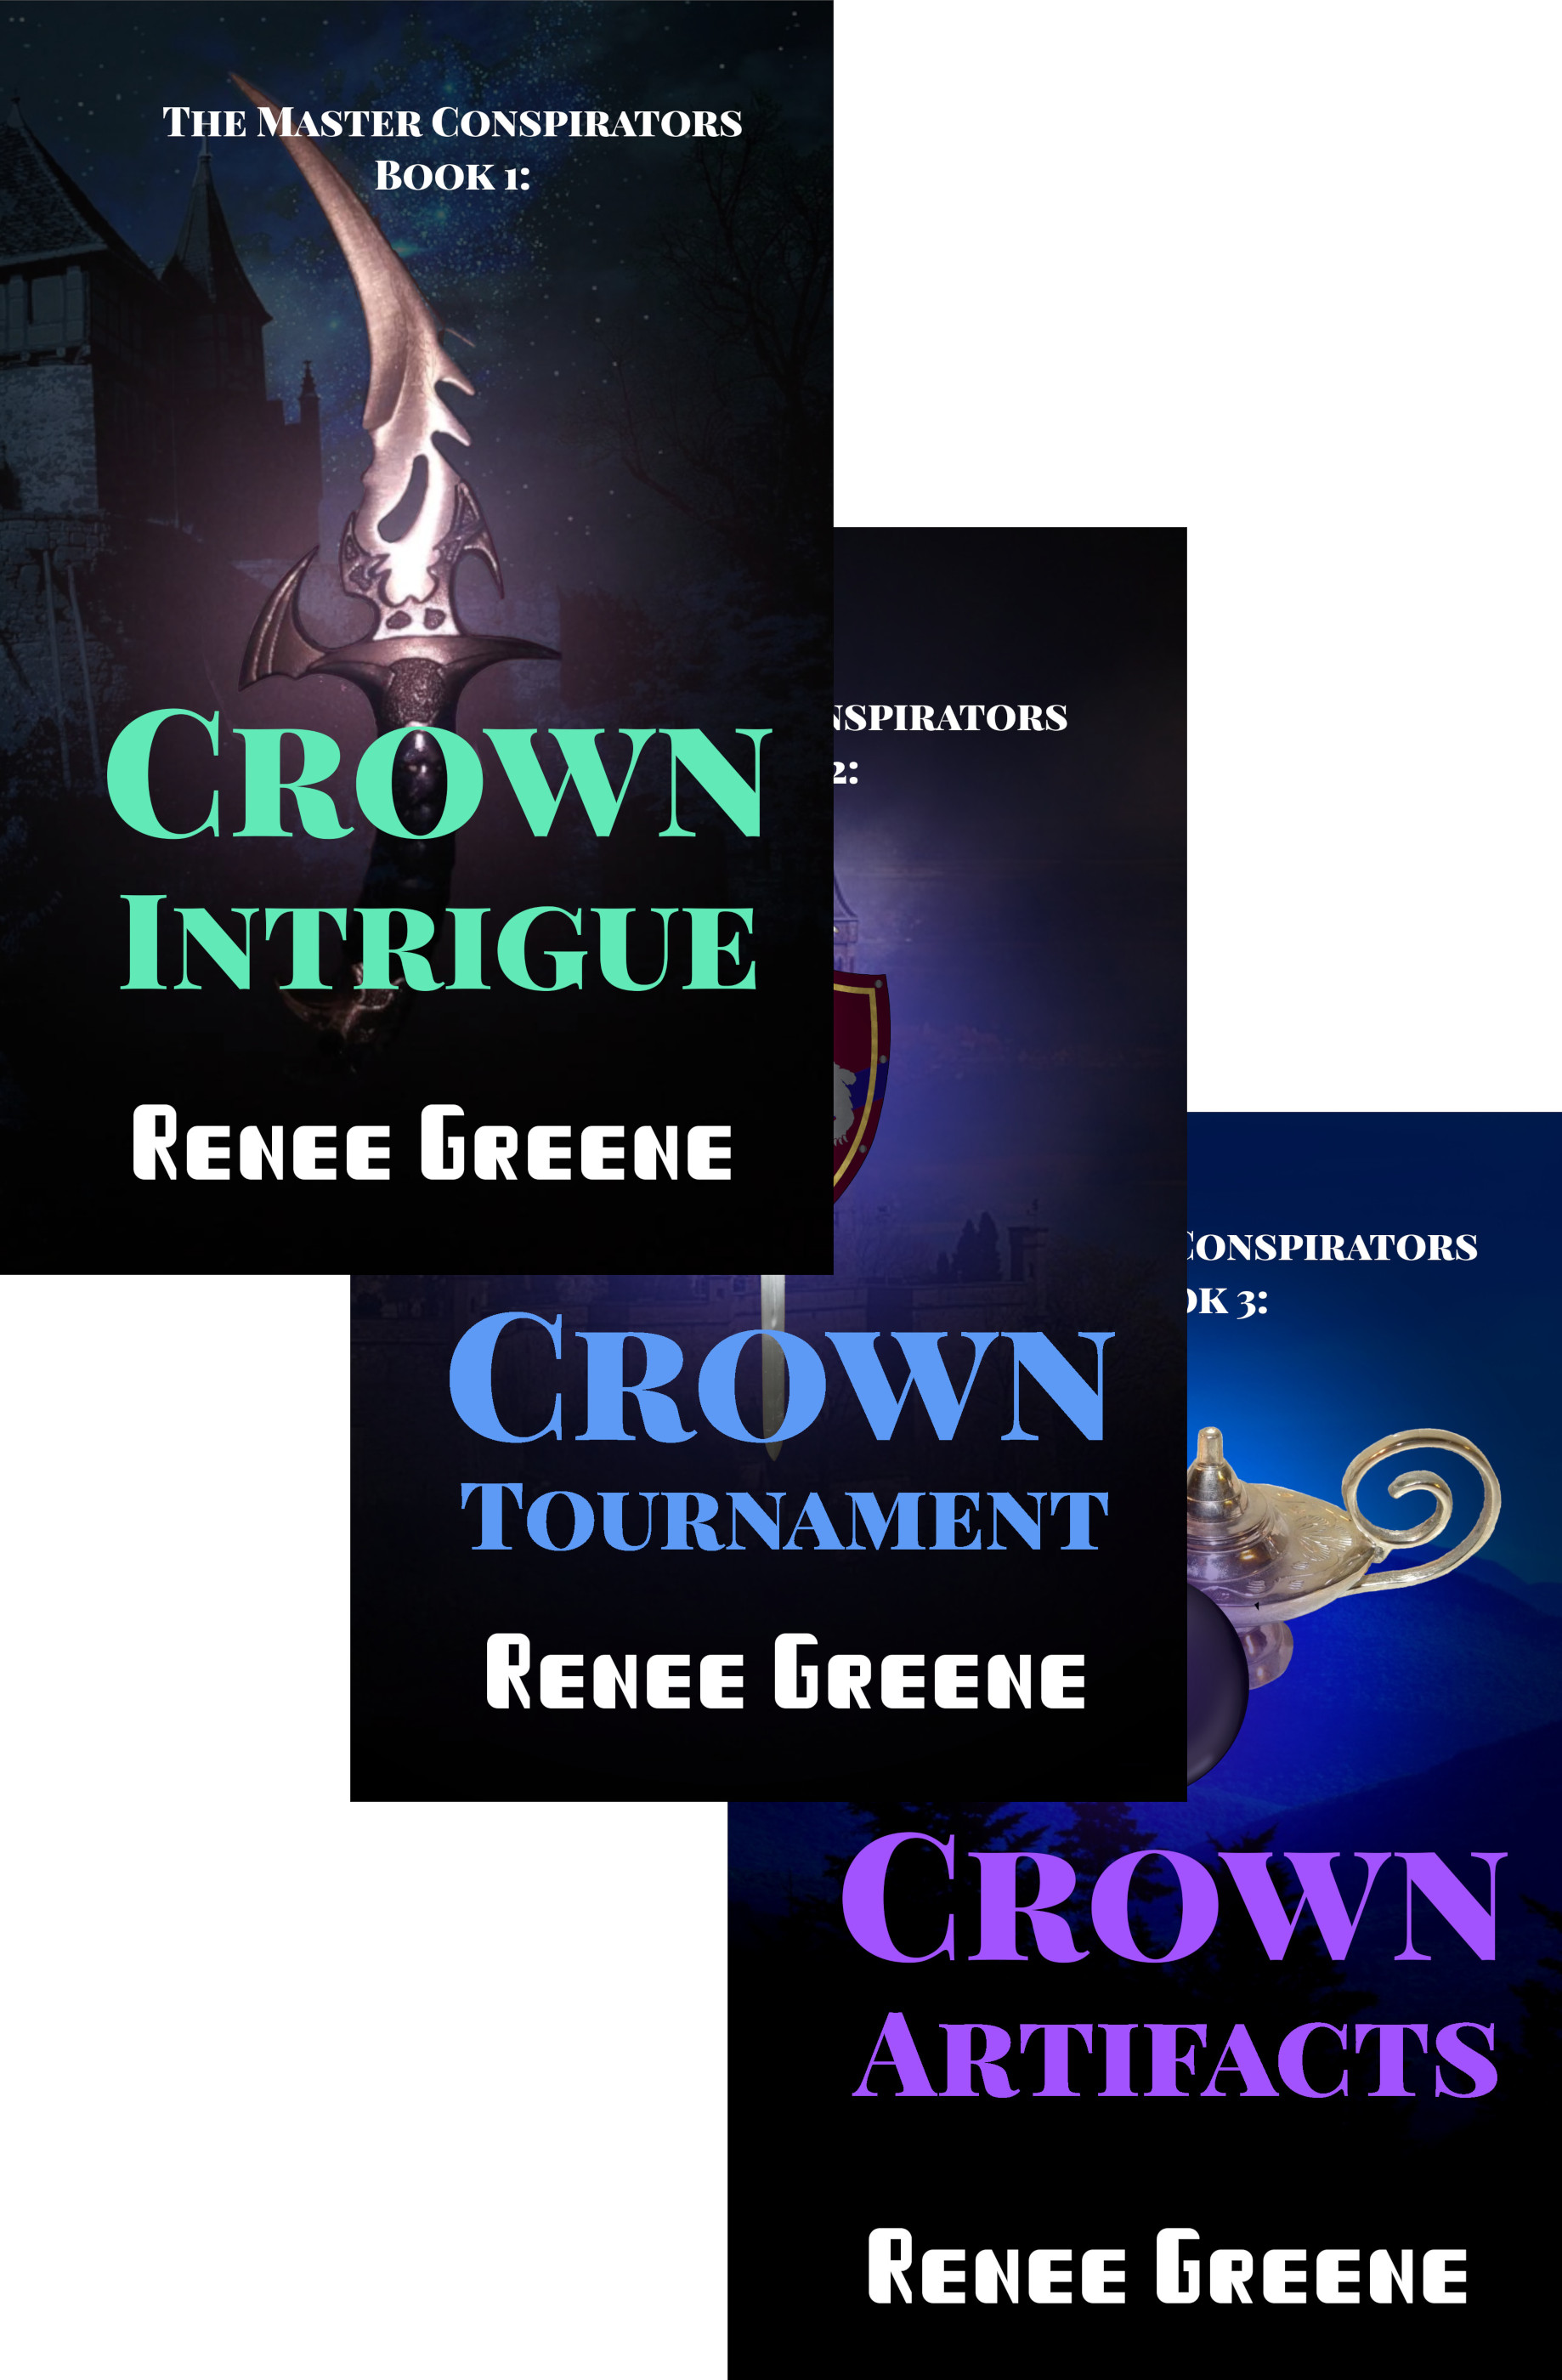 Crown series